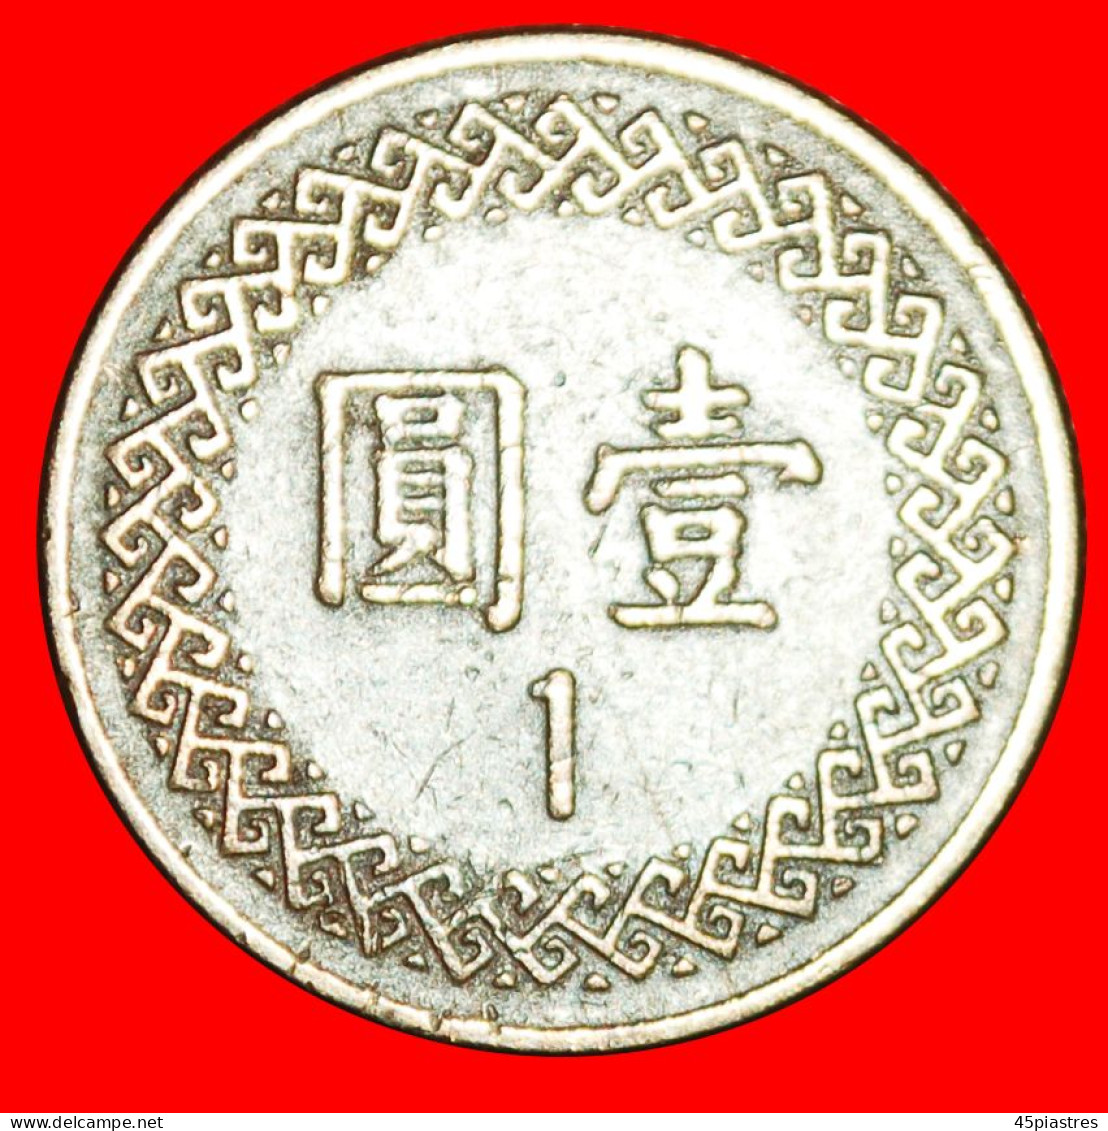 * CHIANG KAI-SHEK (1887-1975): TAIWAN (CHINA) (1981-2022)  1 YUAN 71 (1982)! · LOW START · NO RESERVE! - Taiwan